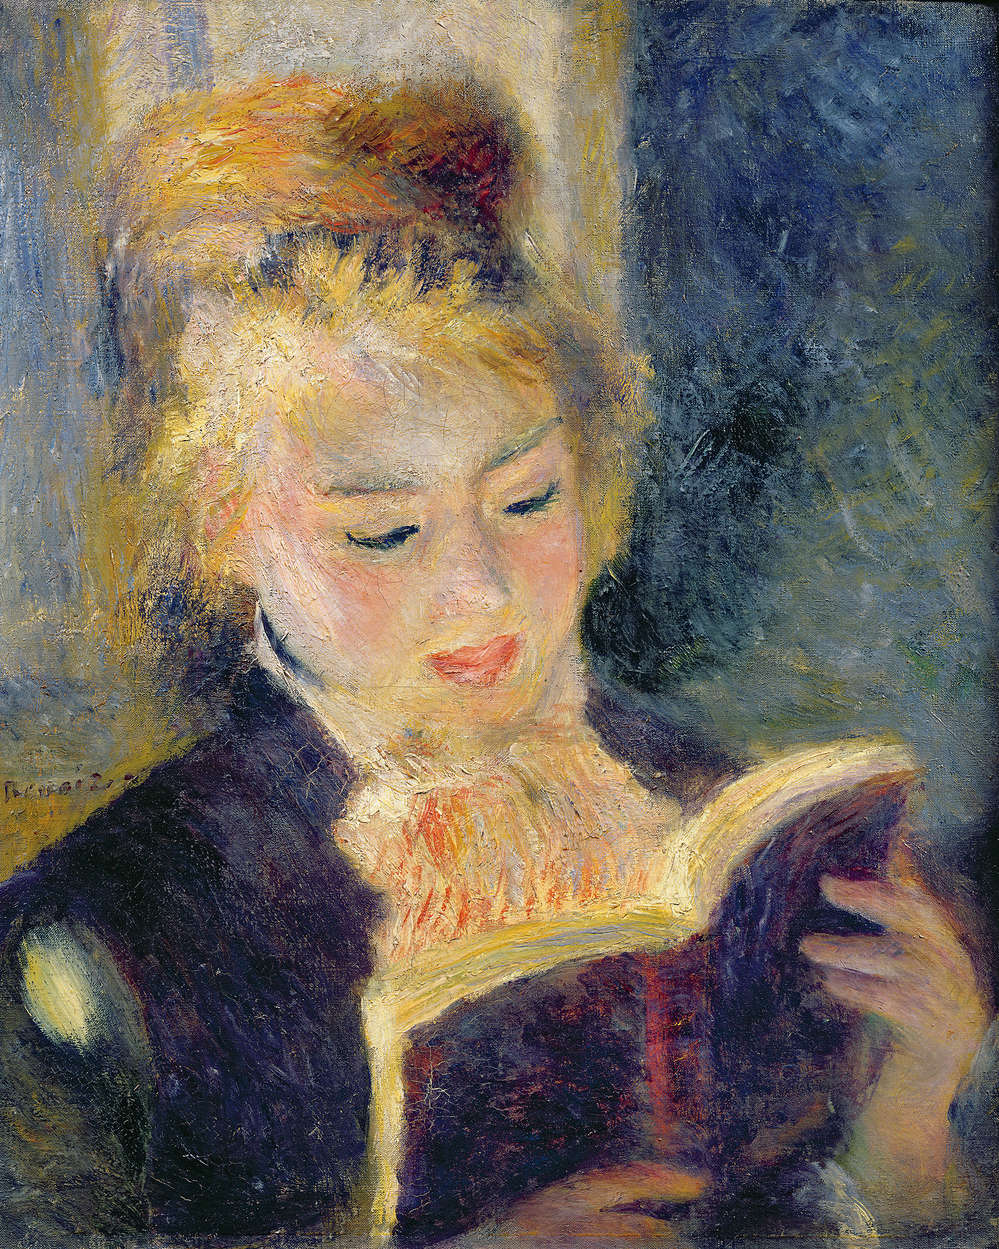             Reading girl" mural by Pierre Auguste Renoir
        